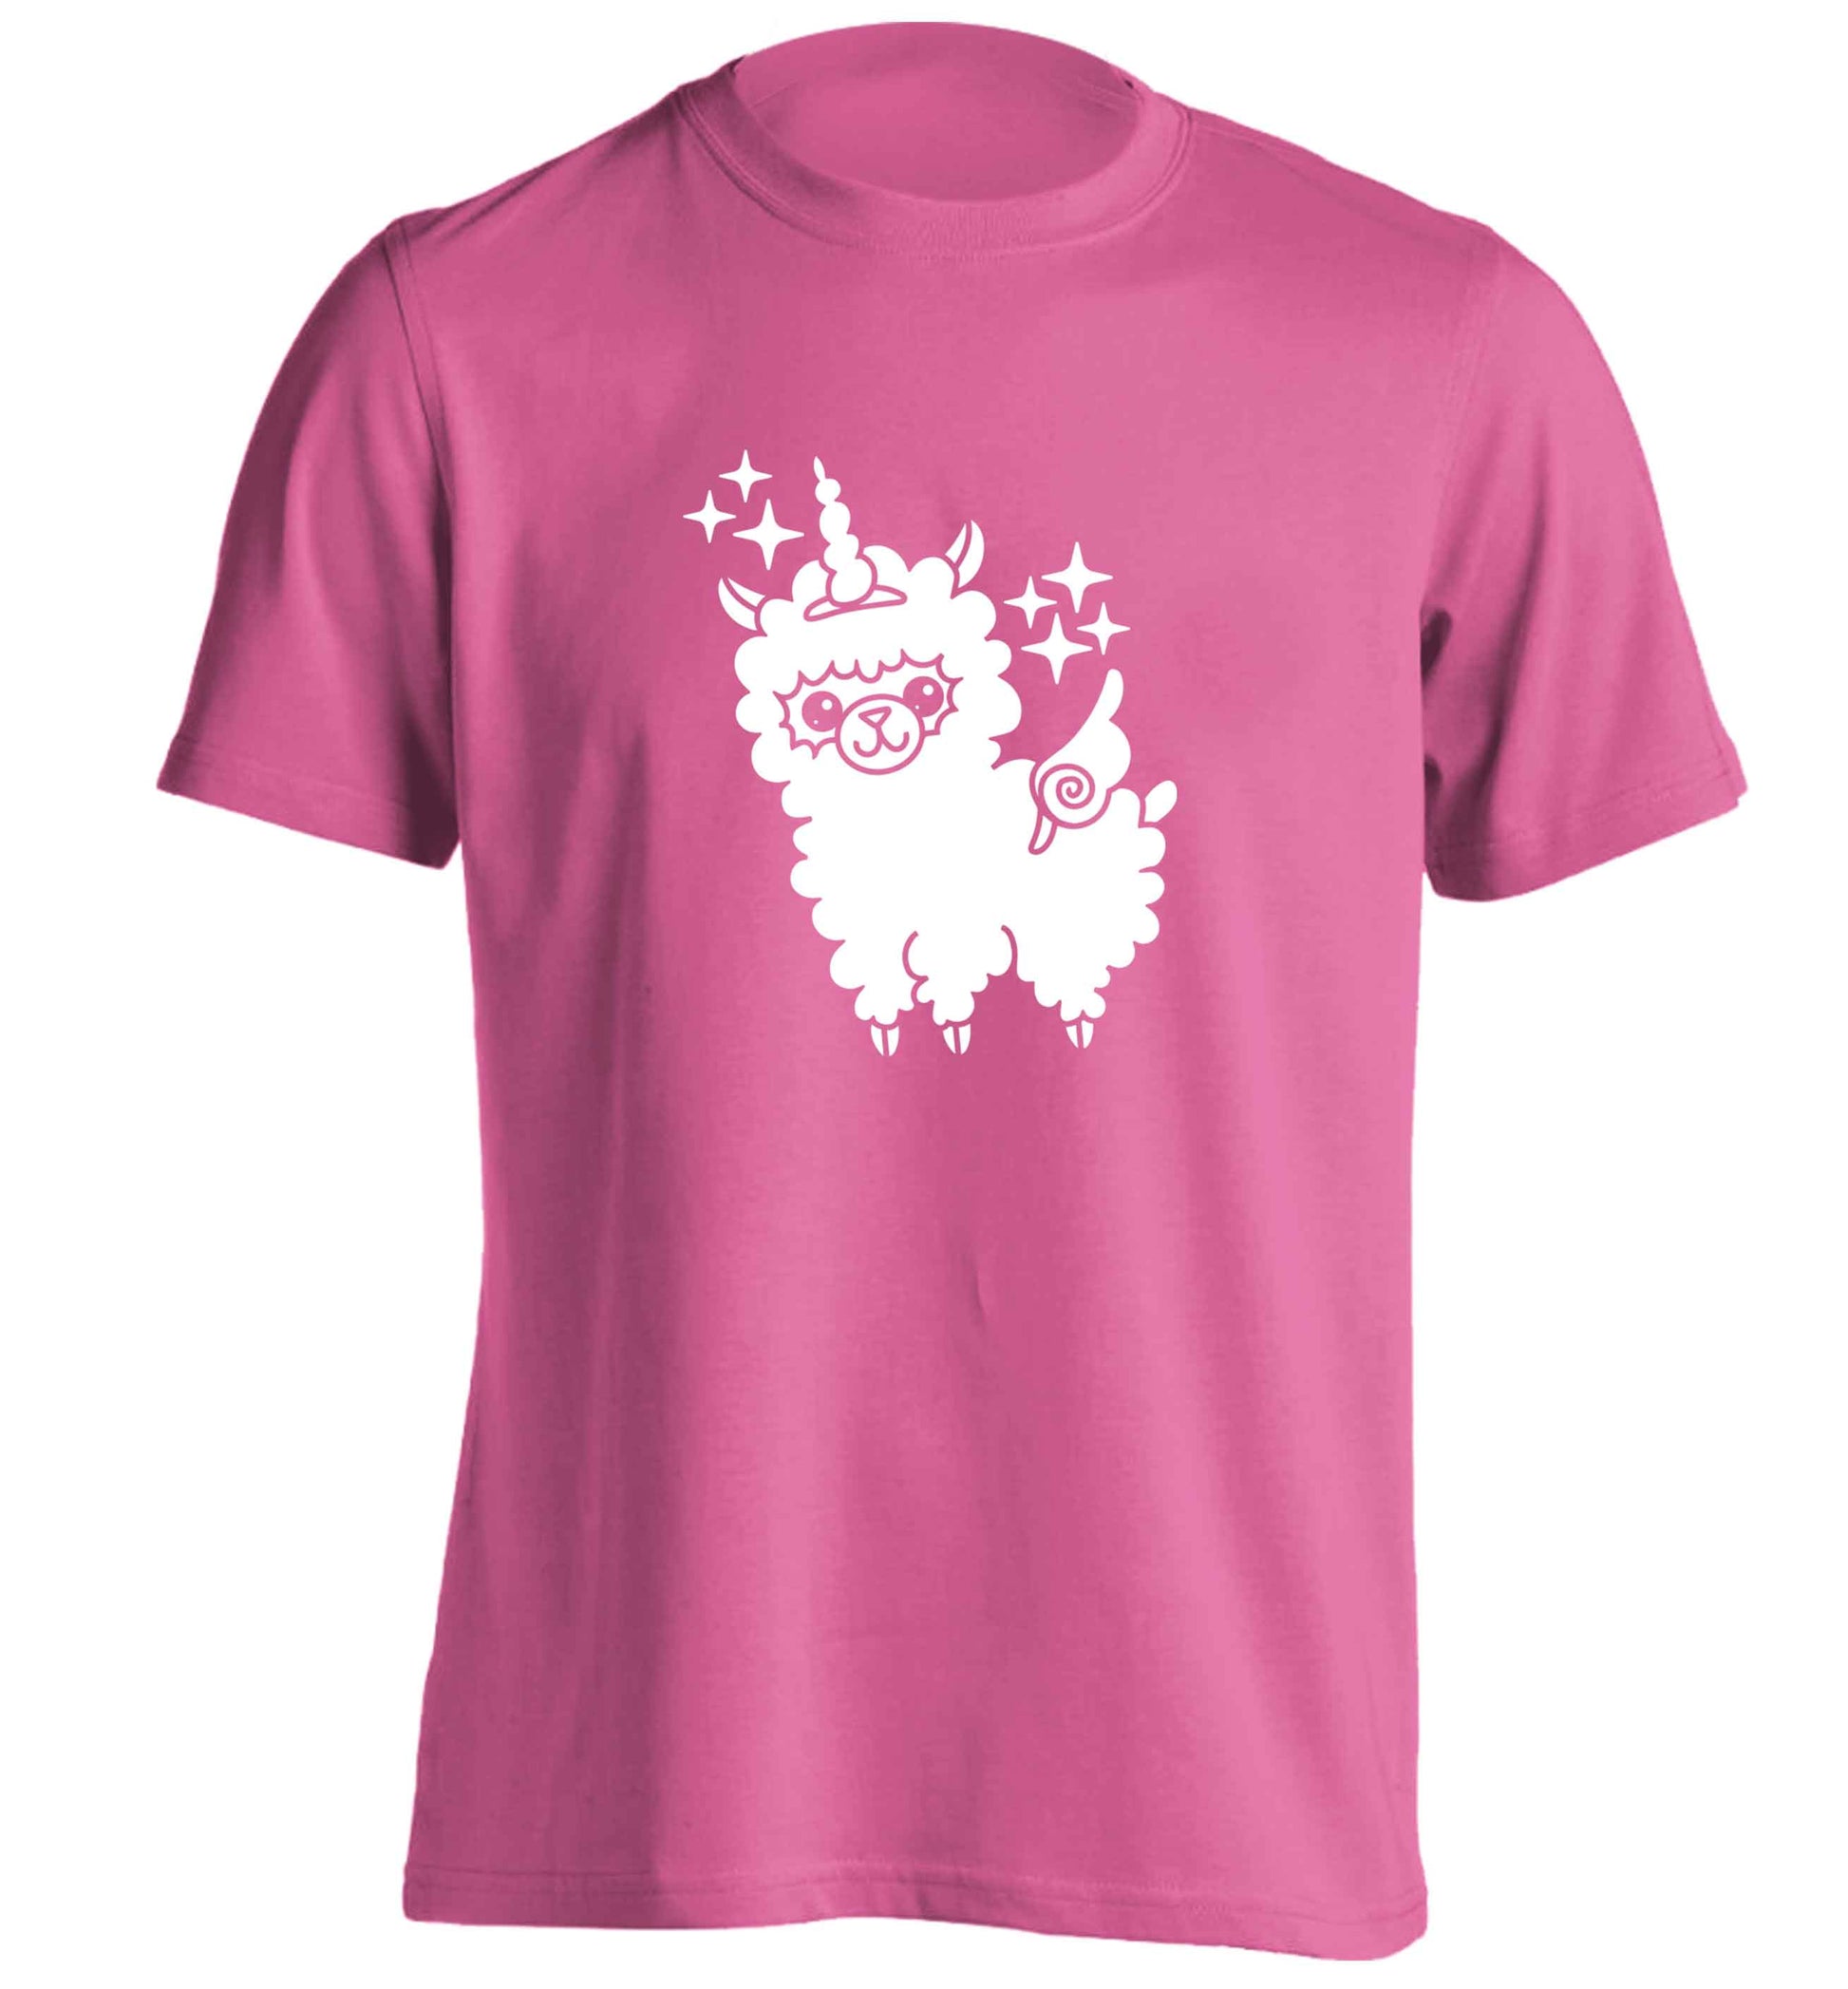 Llamacorn llama unicorn adults unisex pink Tshirt 2XL